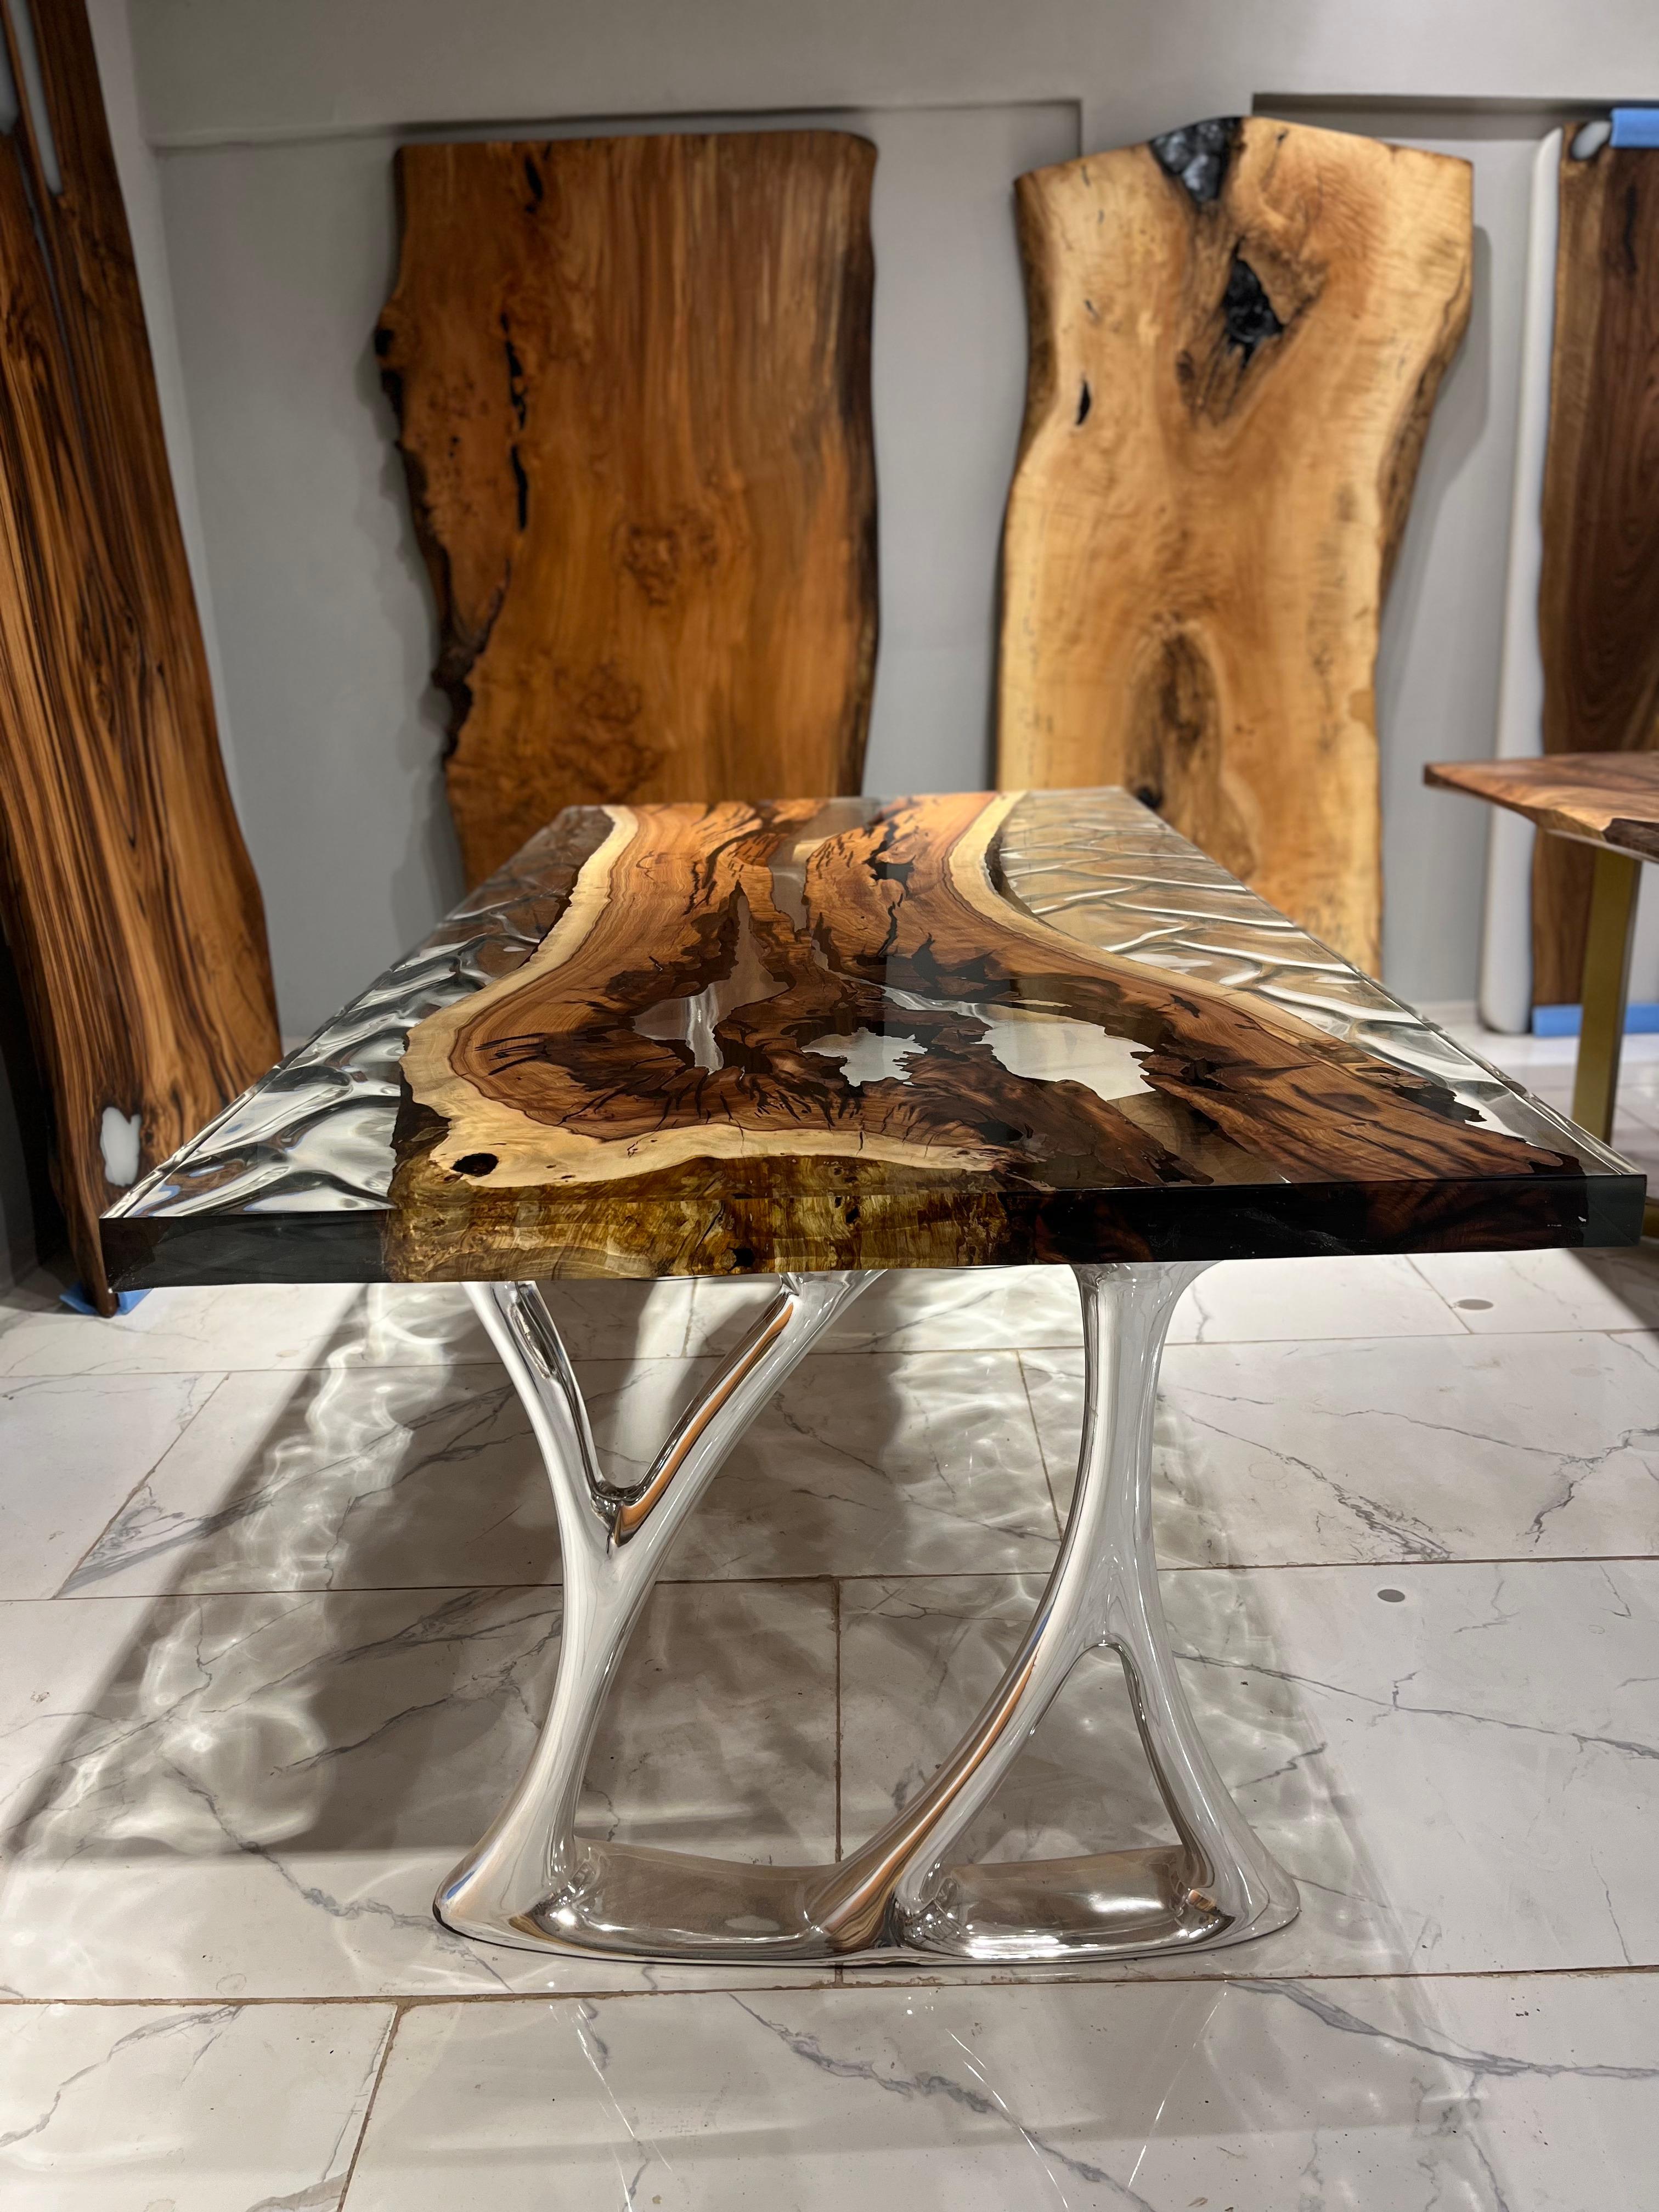 TABLE DE SALLE À MANGER EN RÉSINE ÉPOXY CLAIRE HACKBERRY

Cette table en époxy émerge comme une œuvre d'art unique, inspirée par la beauté de la nature. 

La table en époxy se distingue non seulement par son design mais aussi par sa durabilité.